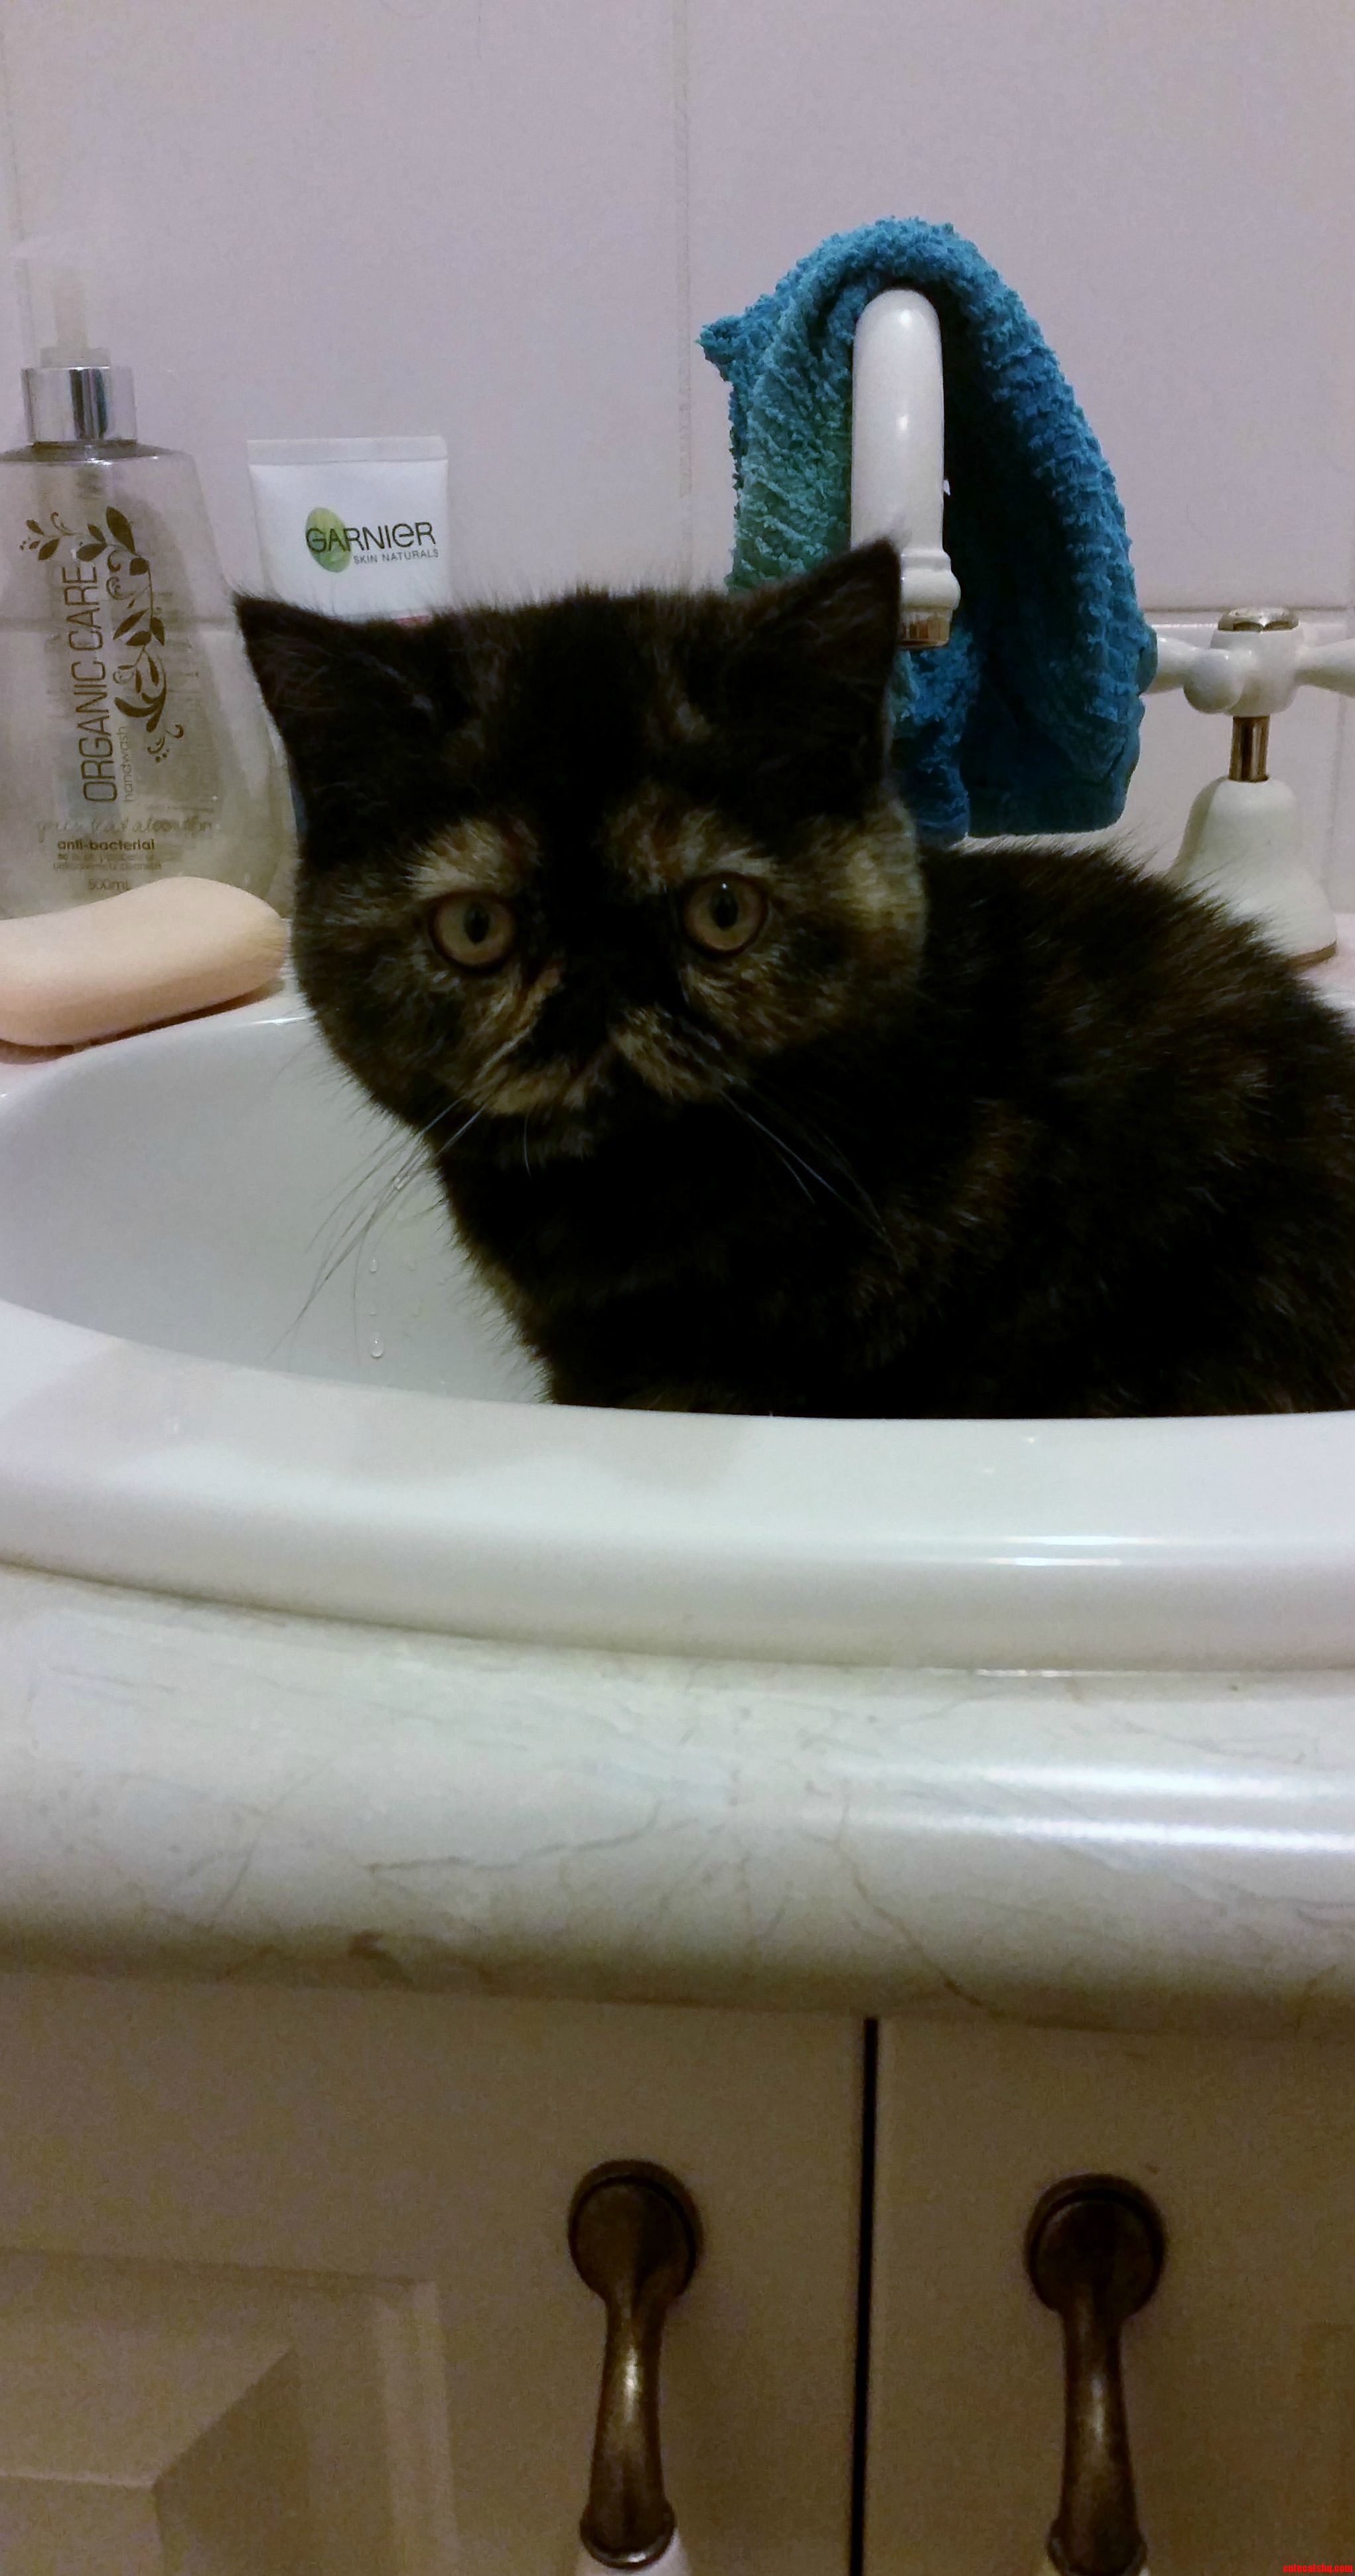 My Kitten Likes Sinks